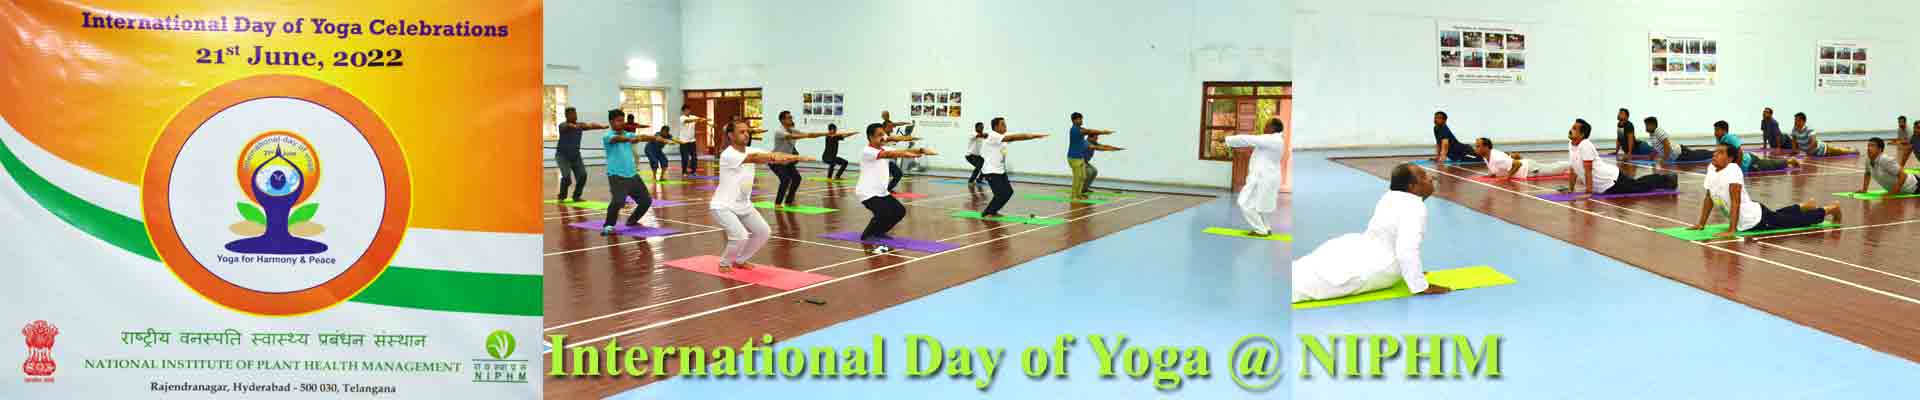 International Day of Yoga @ NIPHM